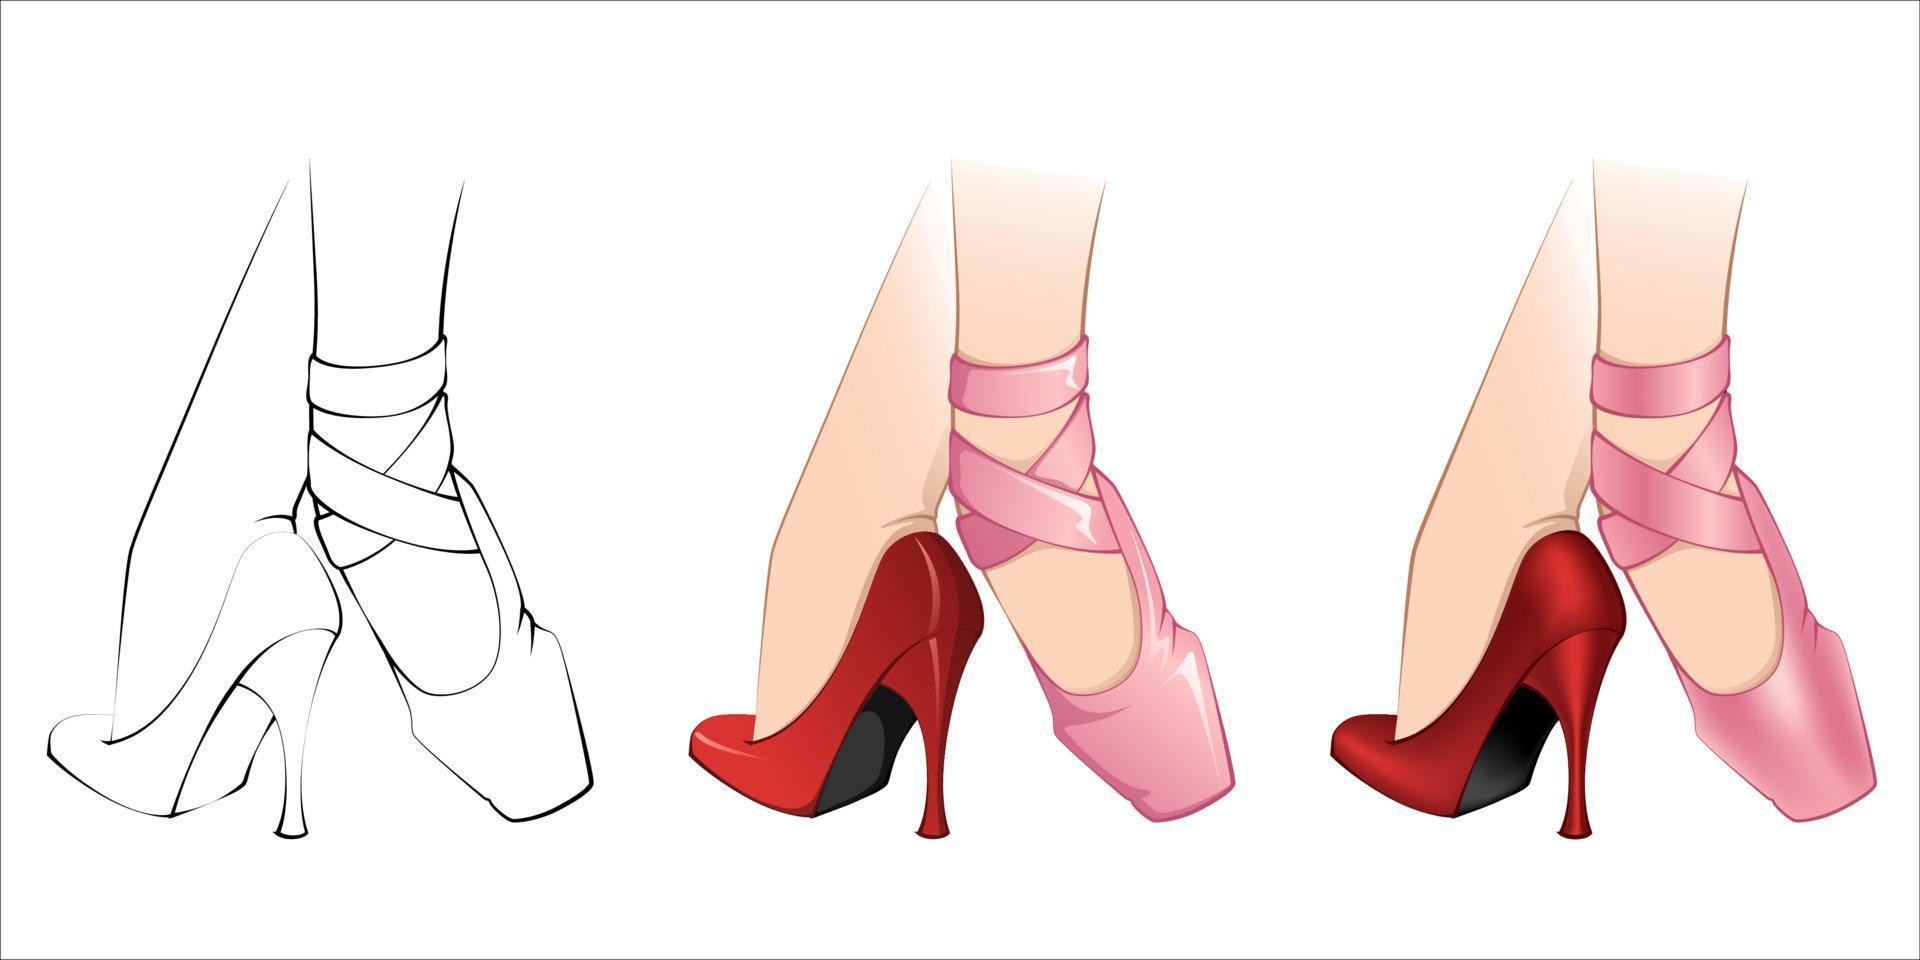 Ballerina Life 01 - Ballerinafüße, die einen rosafarbenen Spitzenschuh und einen roten Schuh mit hohen Absätzen tragen. Strichzeichnungen, Vektor- und Maschenverlauf vektor